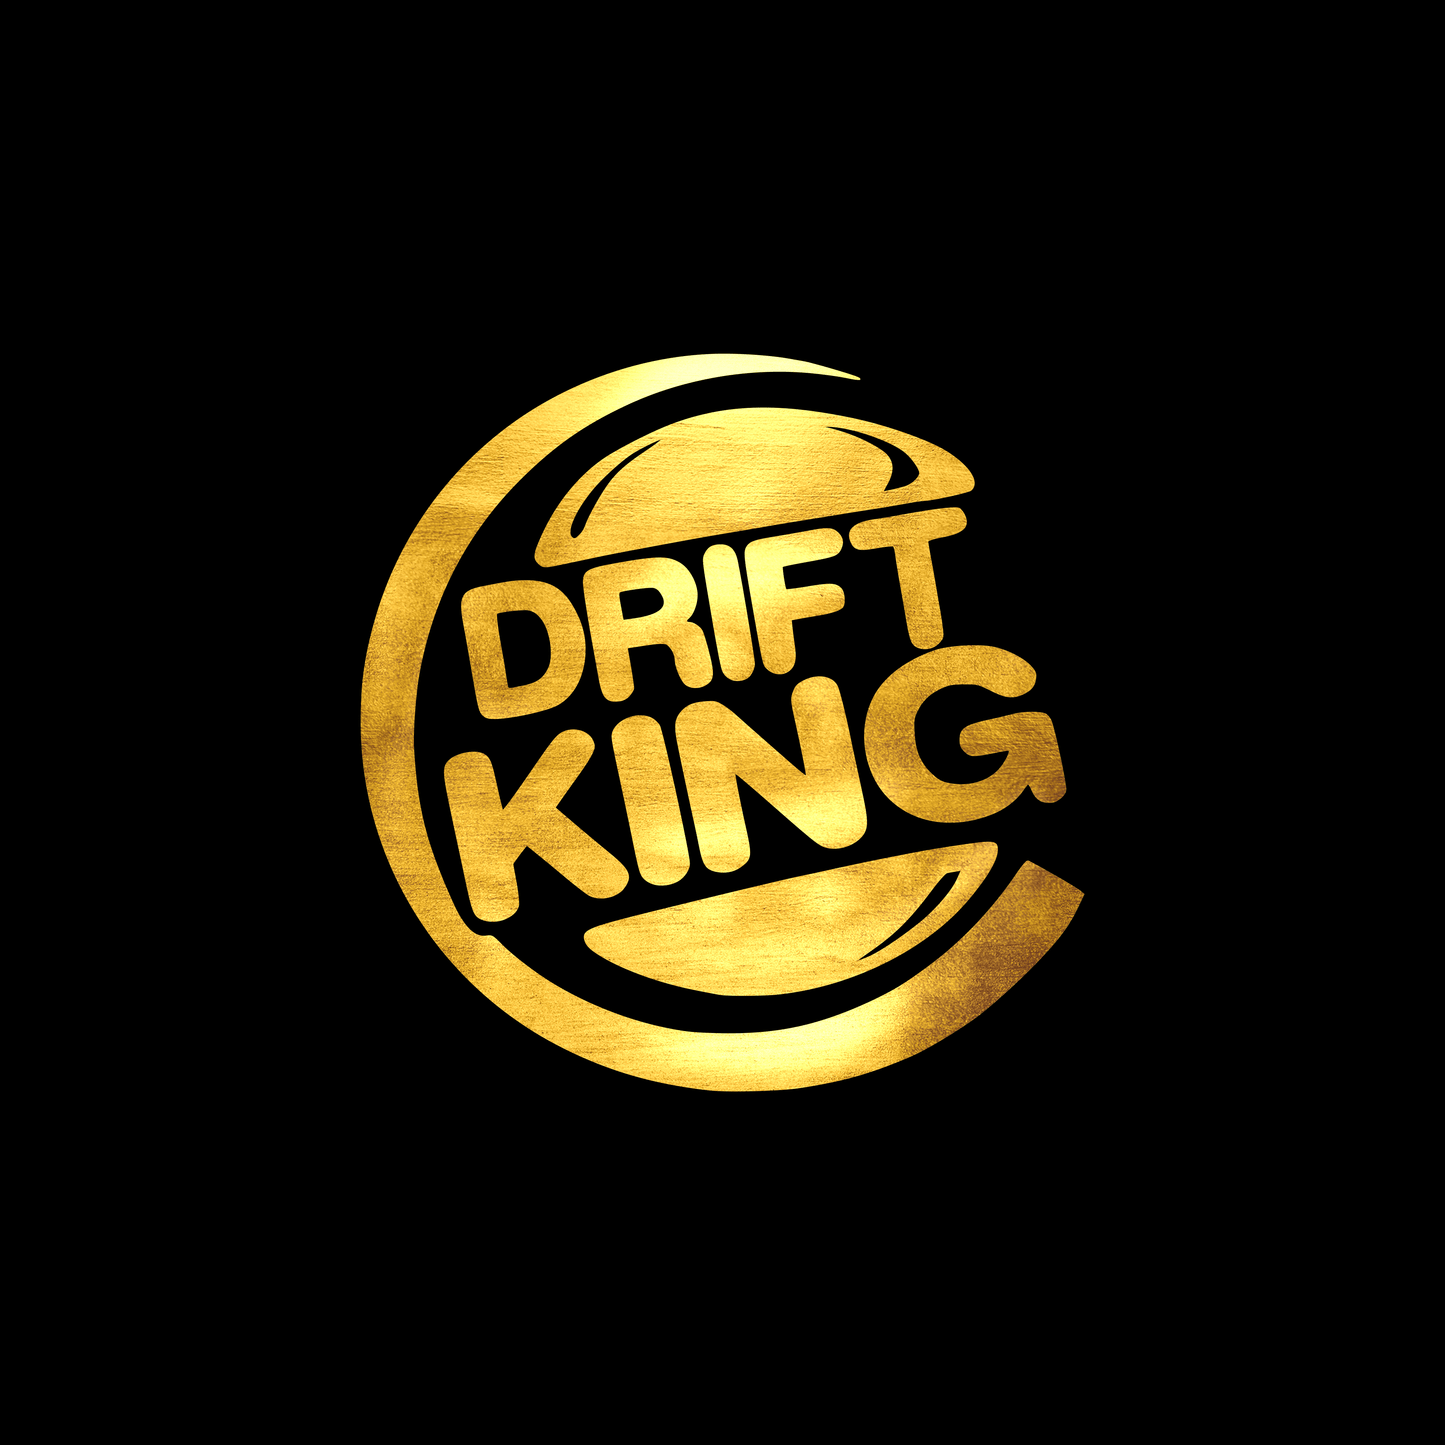  Drift king sticker decal